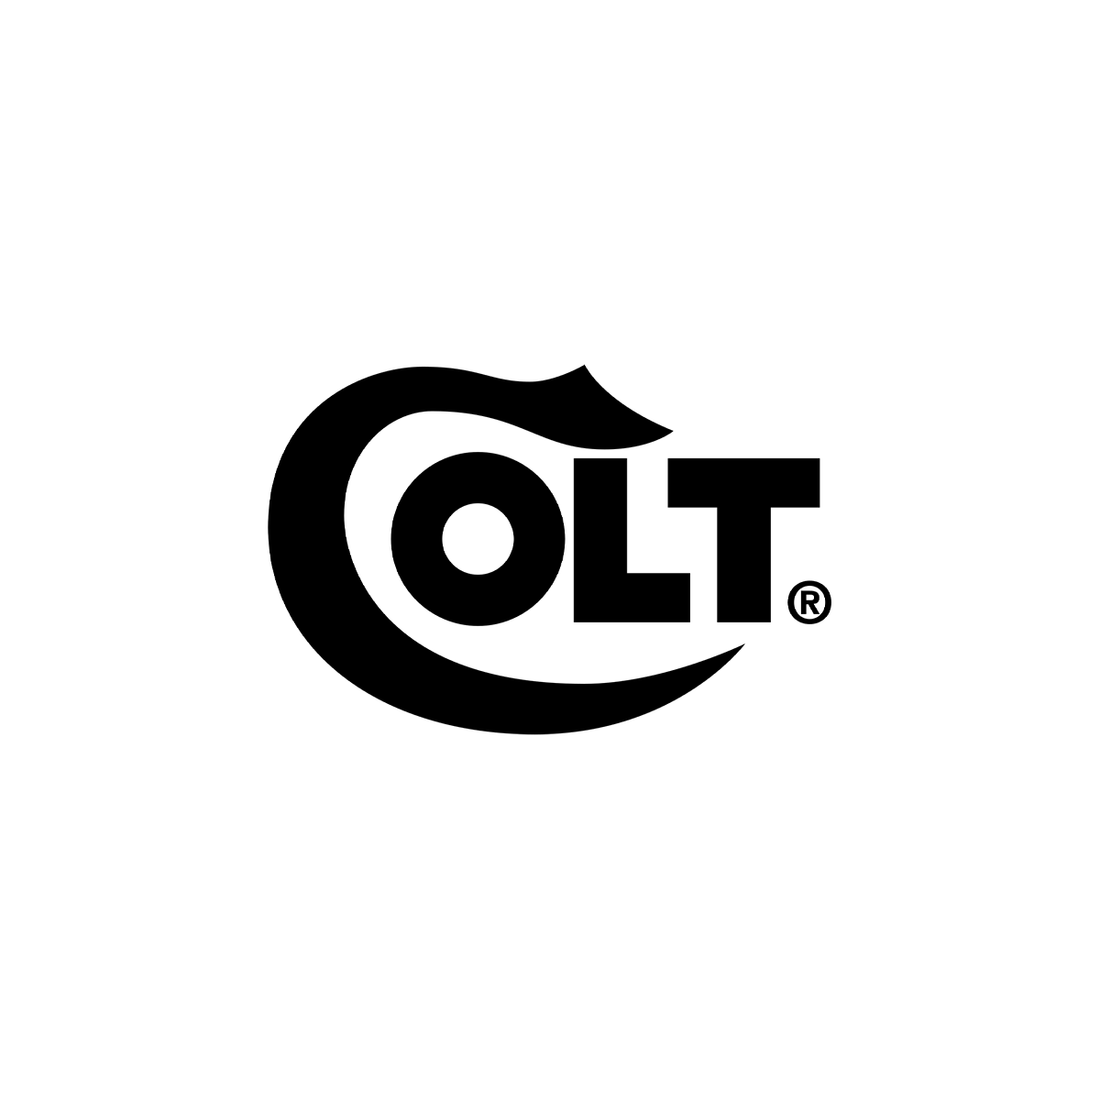 Colt IWB/OWB 2-n-1 Holsters